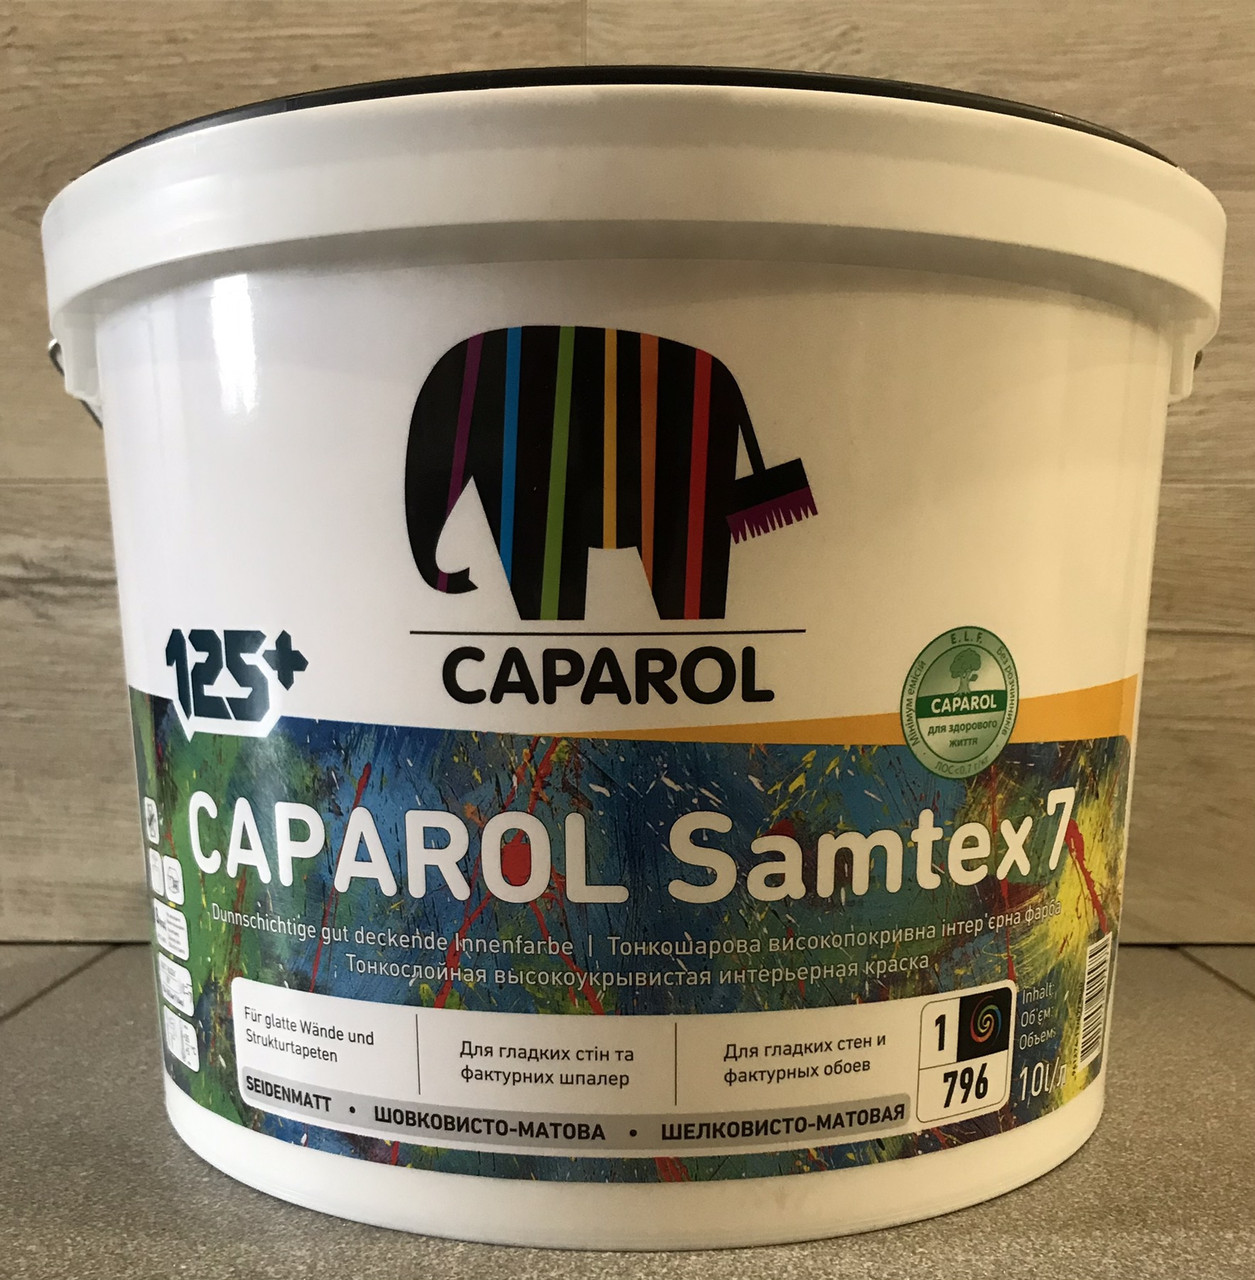 Інтер'єрна латексна фарба для стін і стель матова,стійка до миття Caparol "SAMTEX 3" - 2,5 л.